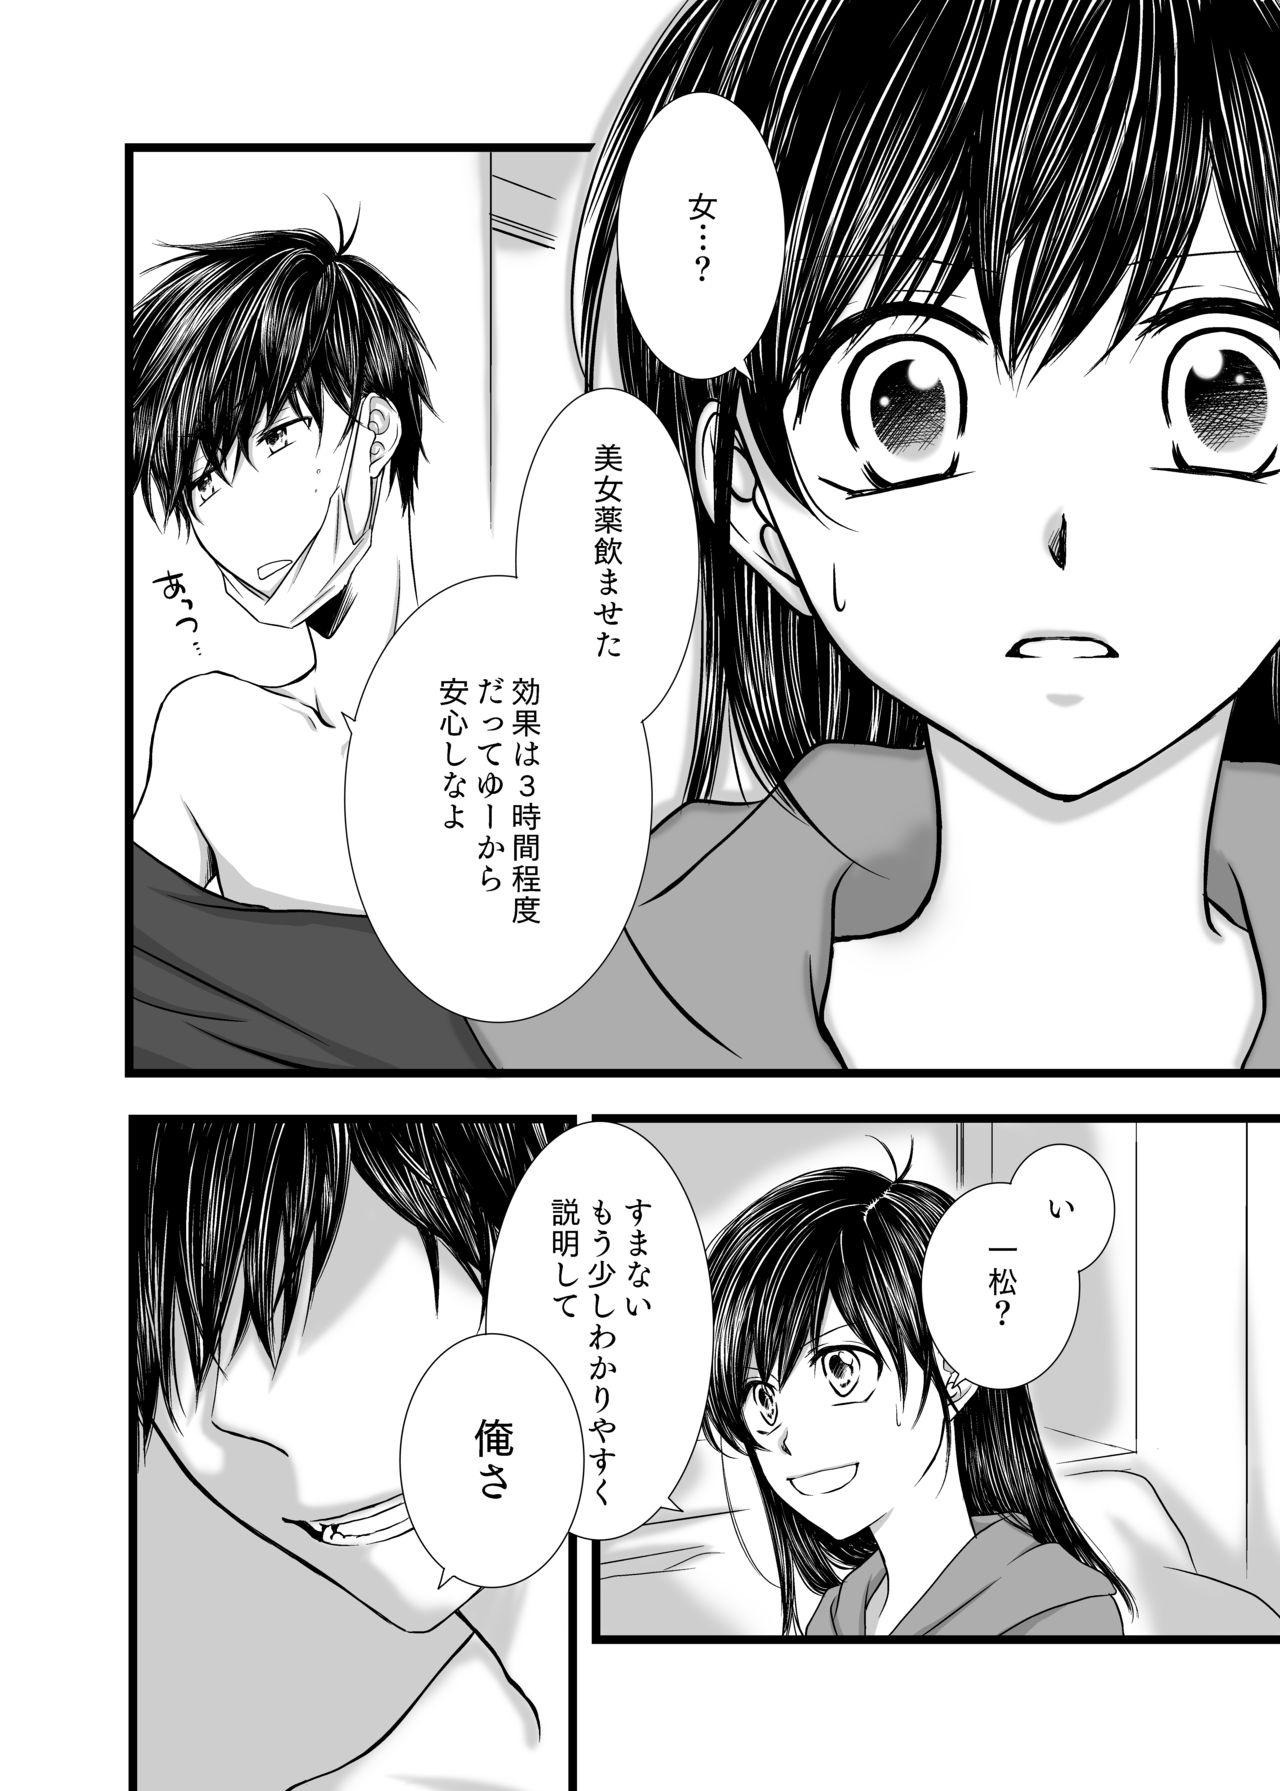 Gay Straight Boys 愛のカタチは。 - Osomatsu-san 18 Year Old - Page 7